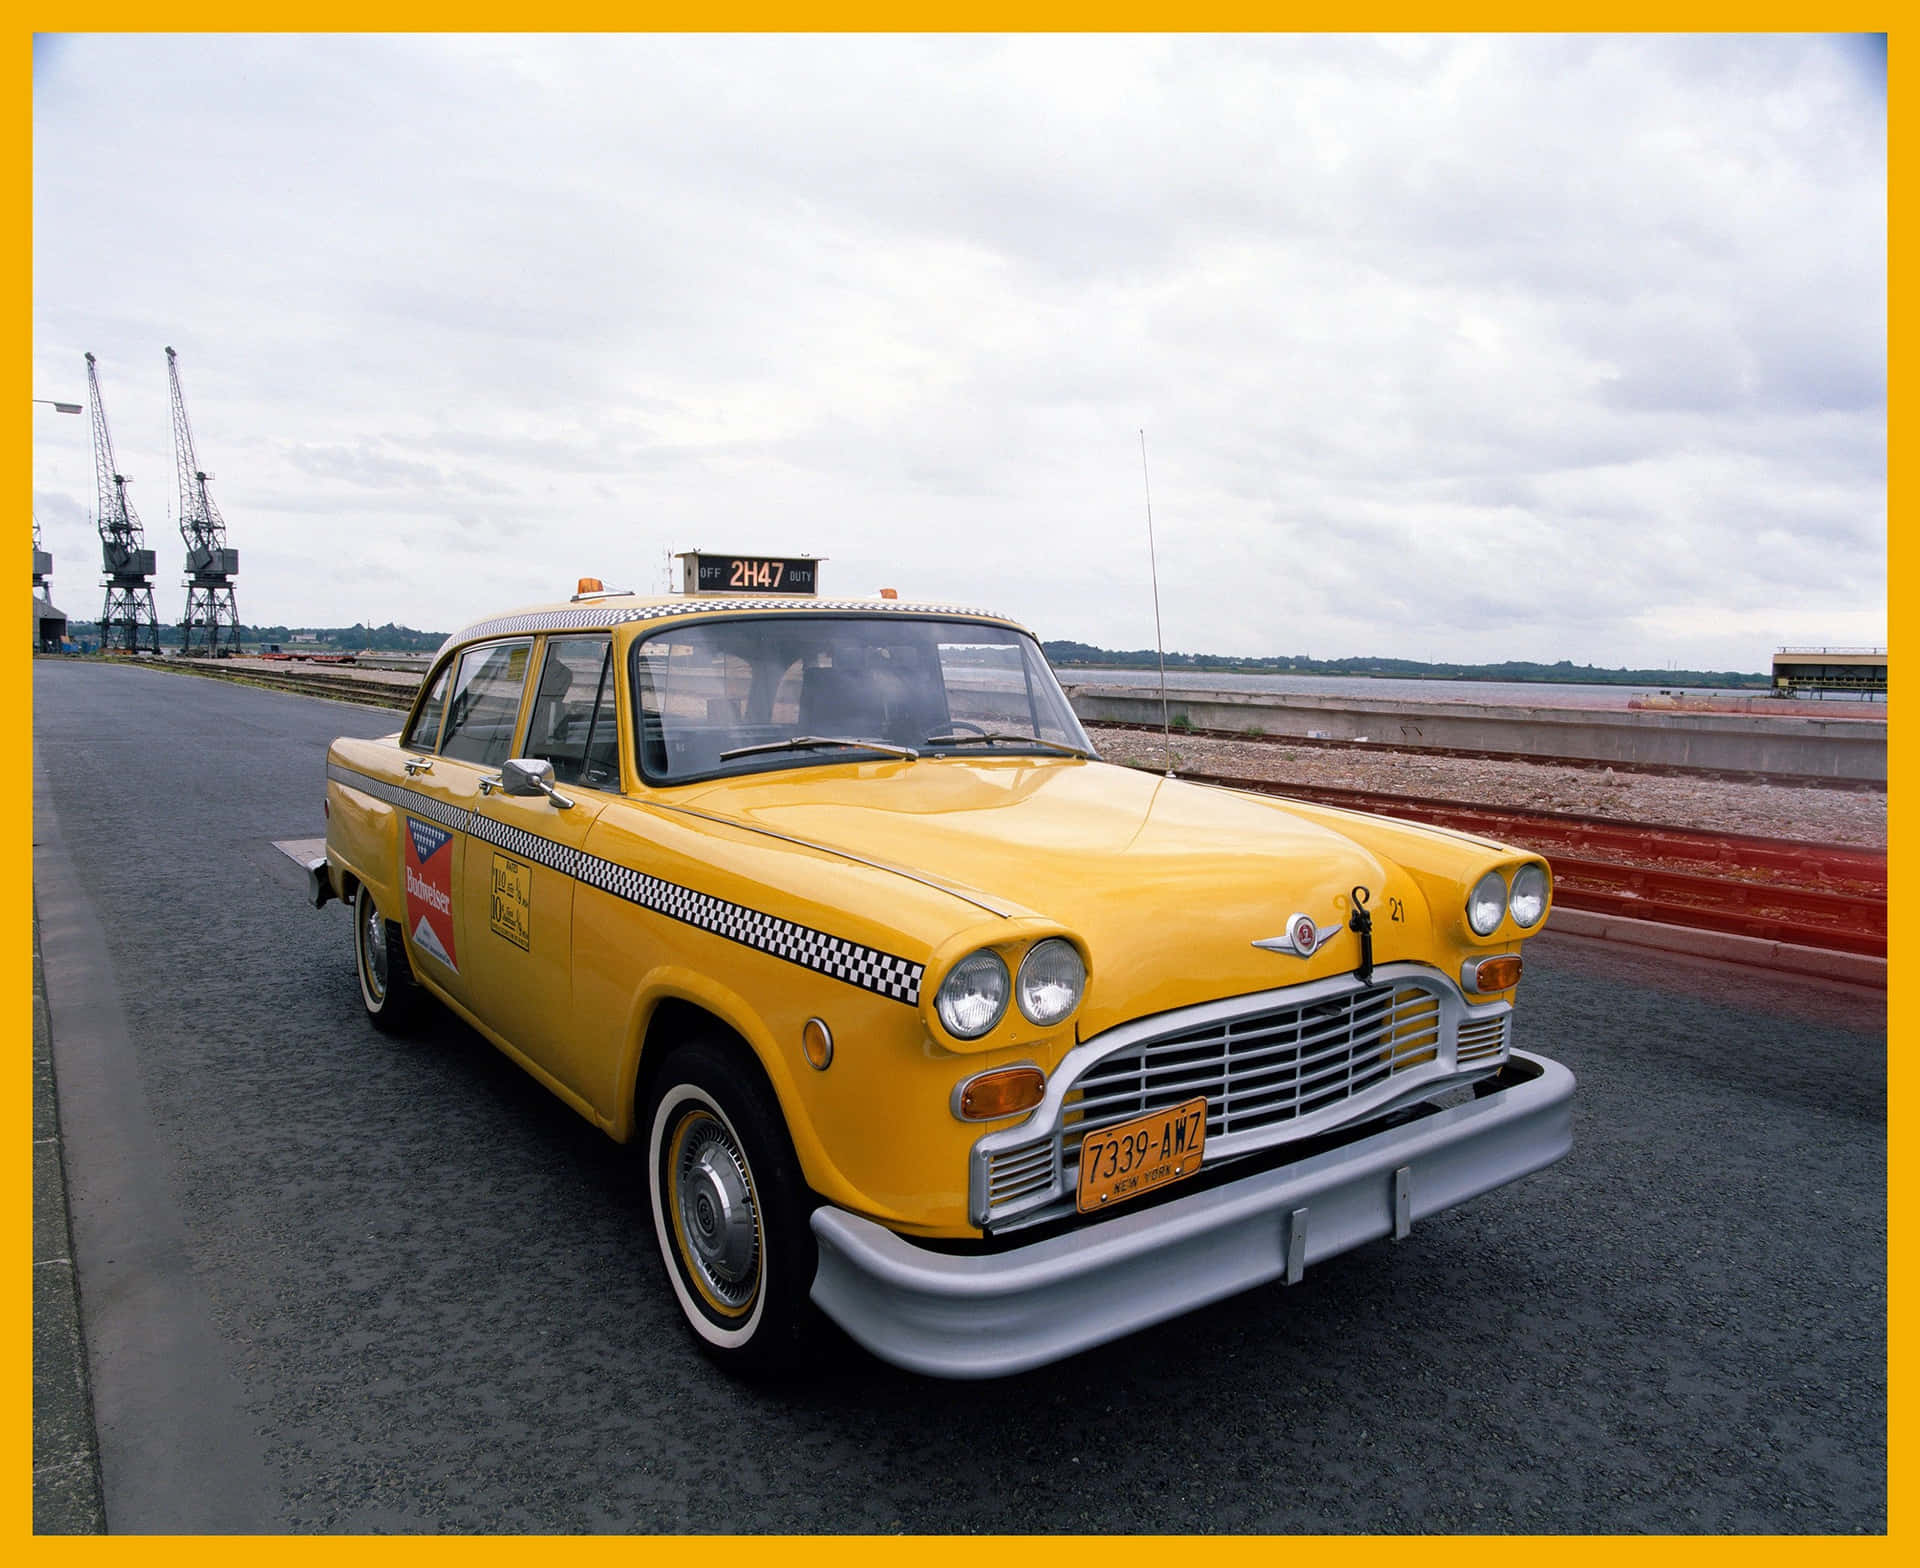 Fortsätteratt Erbjuda Säker, Pålitlig Taxiservice